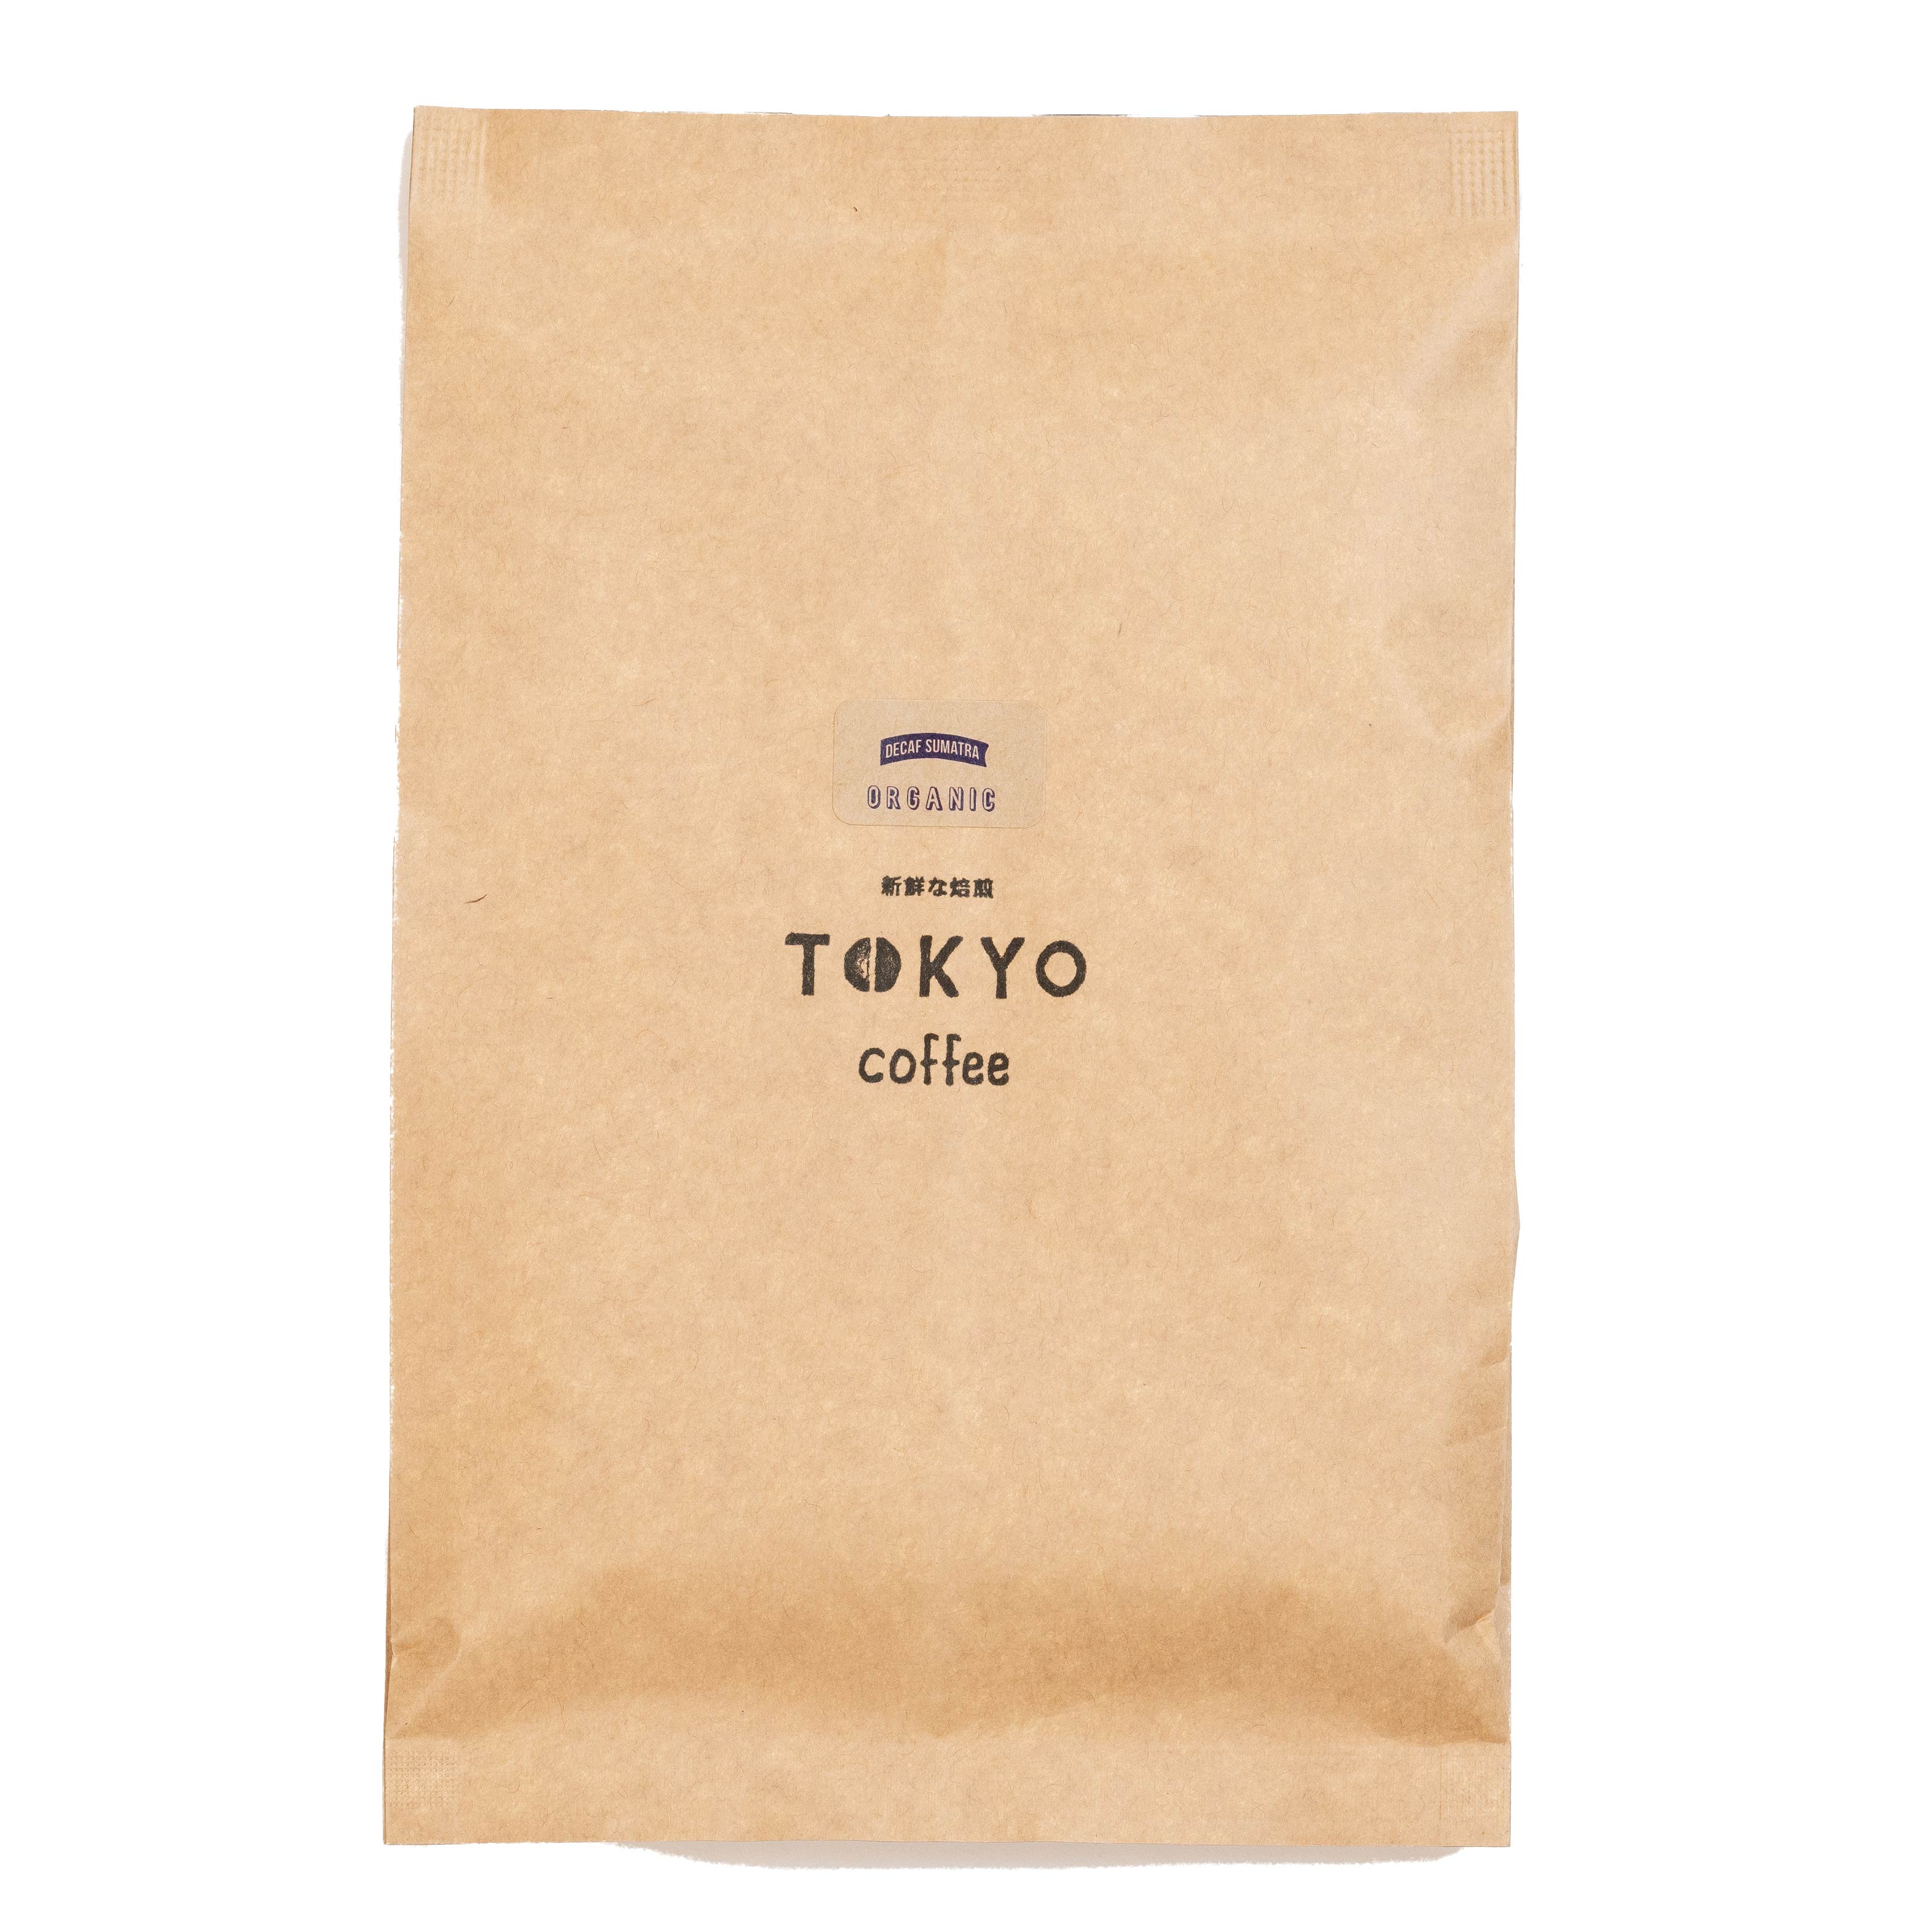 TOKYO COFFEE オーガニック コーヒー シングルオリジン デカフェ スマトラ 200g  200gでコーヒー約14杯分｜カフェインレス オーガニック コーヒー 豆 有機コーヒー豆 カフェインレス コーヒー豆 カフェインレス 珈琲豆 有機珈琲 caffeineless